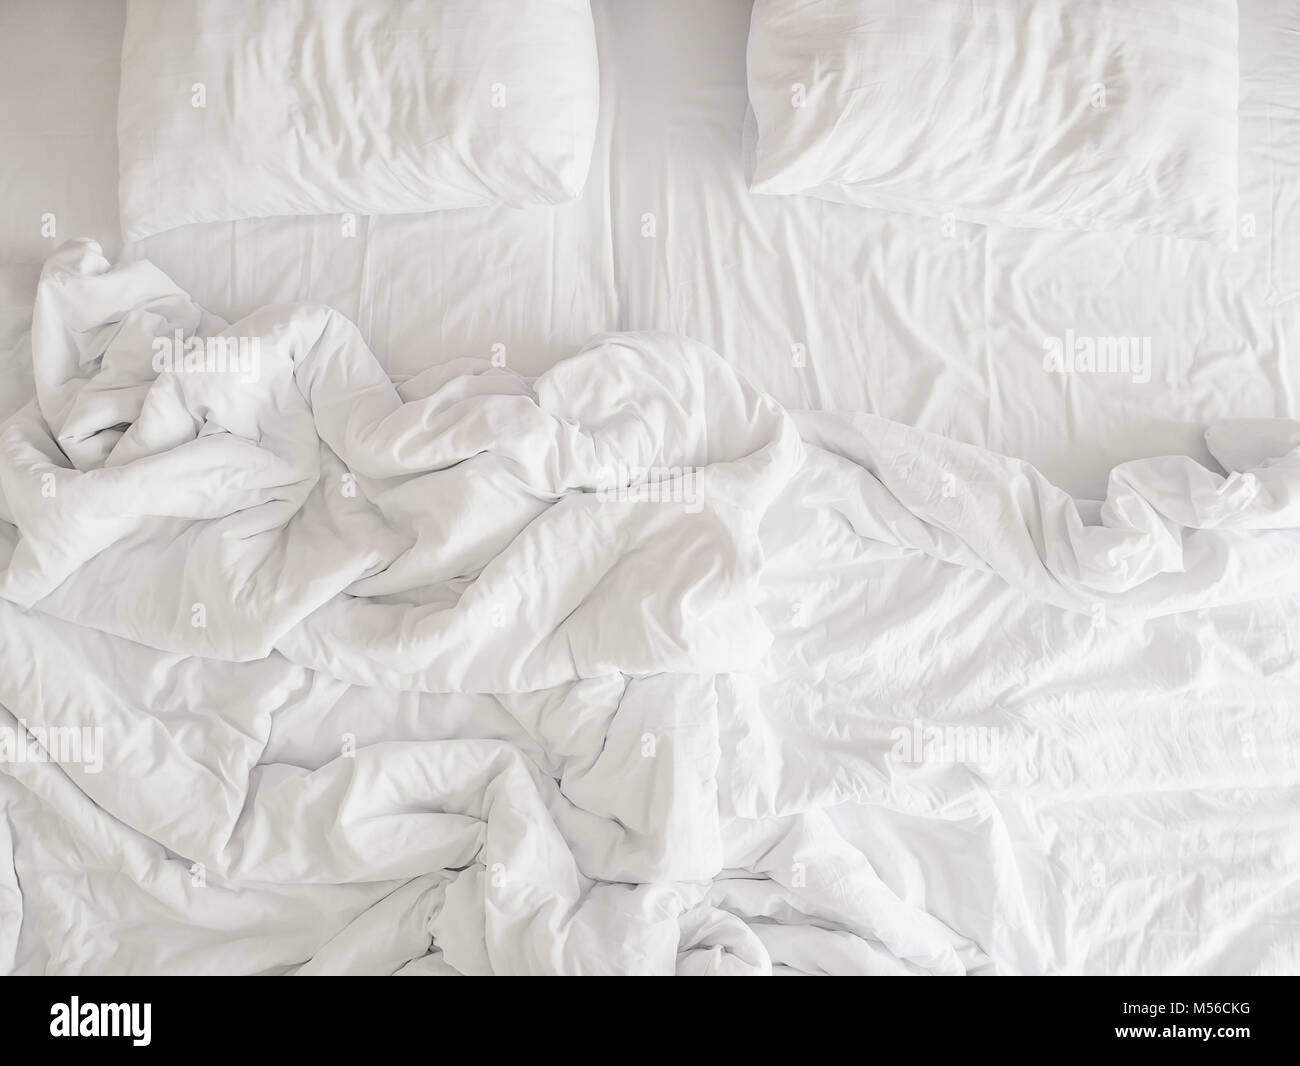 Blick von oben auf die ungemachten Betten Bettwäsche und Kissen, Ungemacht unordentliche Bett nach Komfort schlafen Konzept Stockfoto